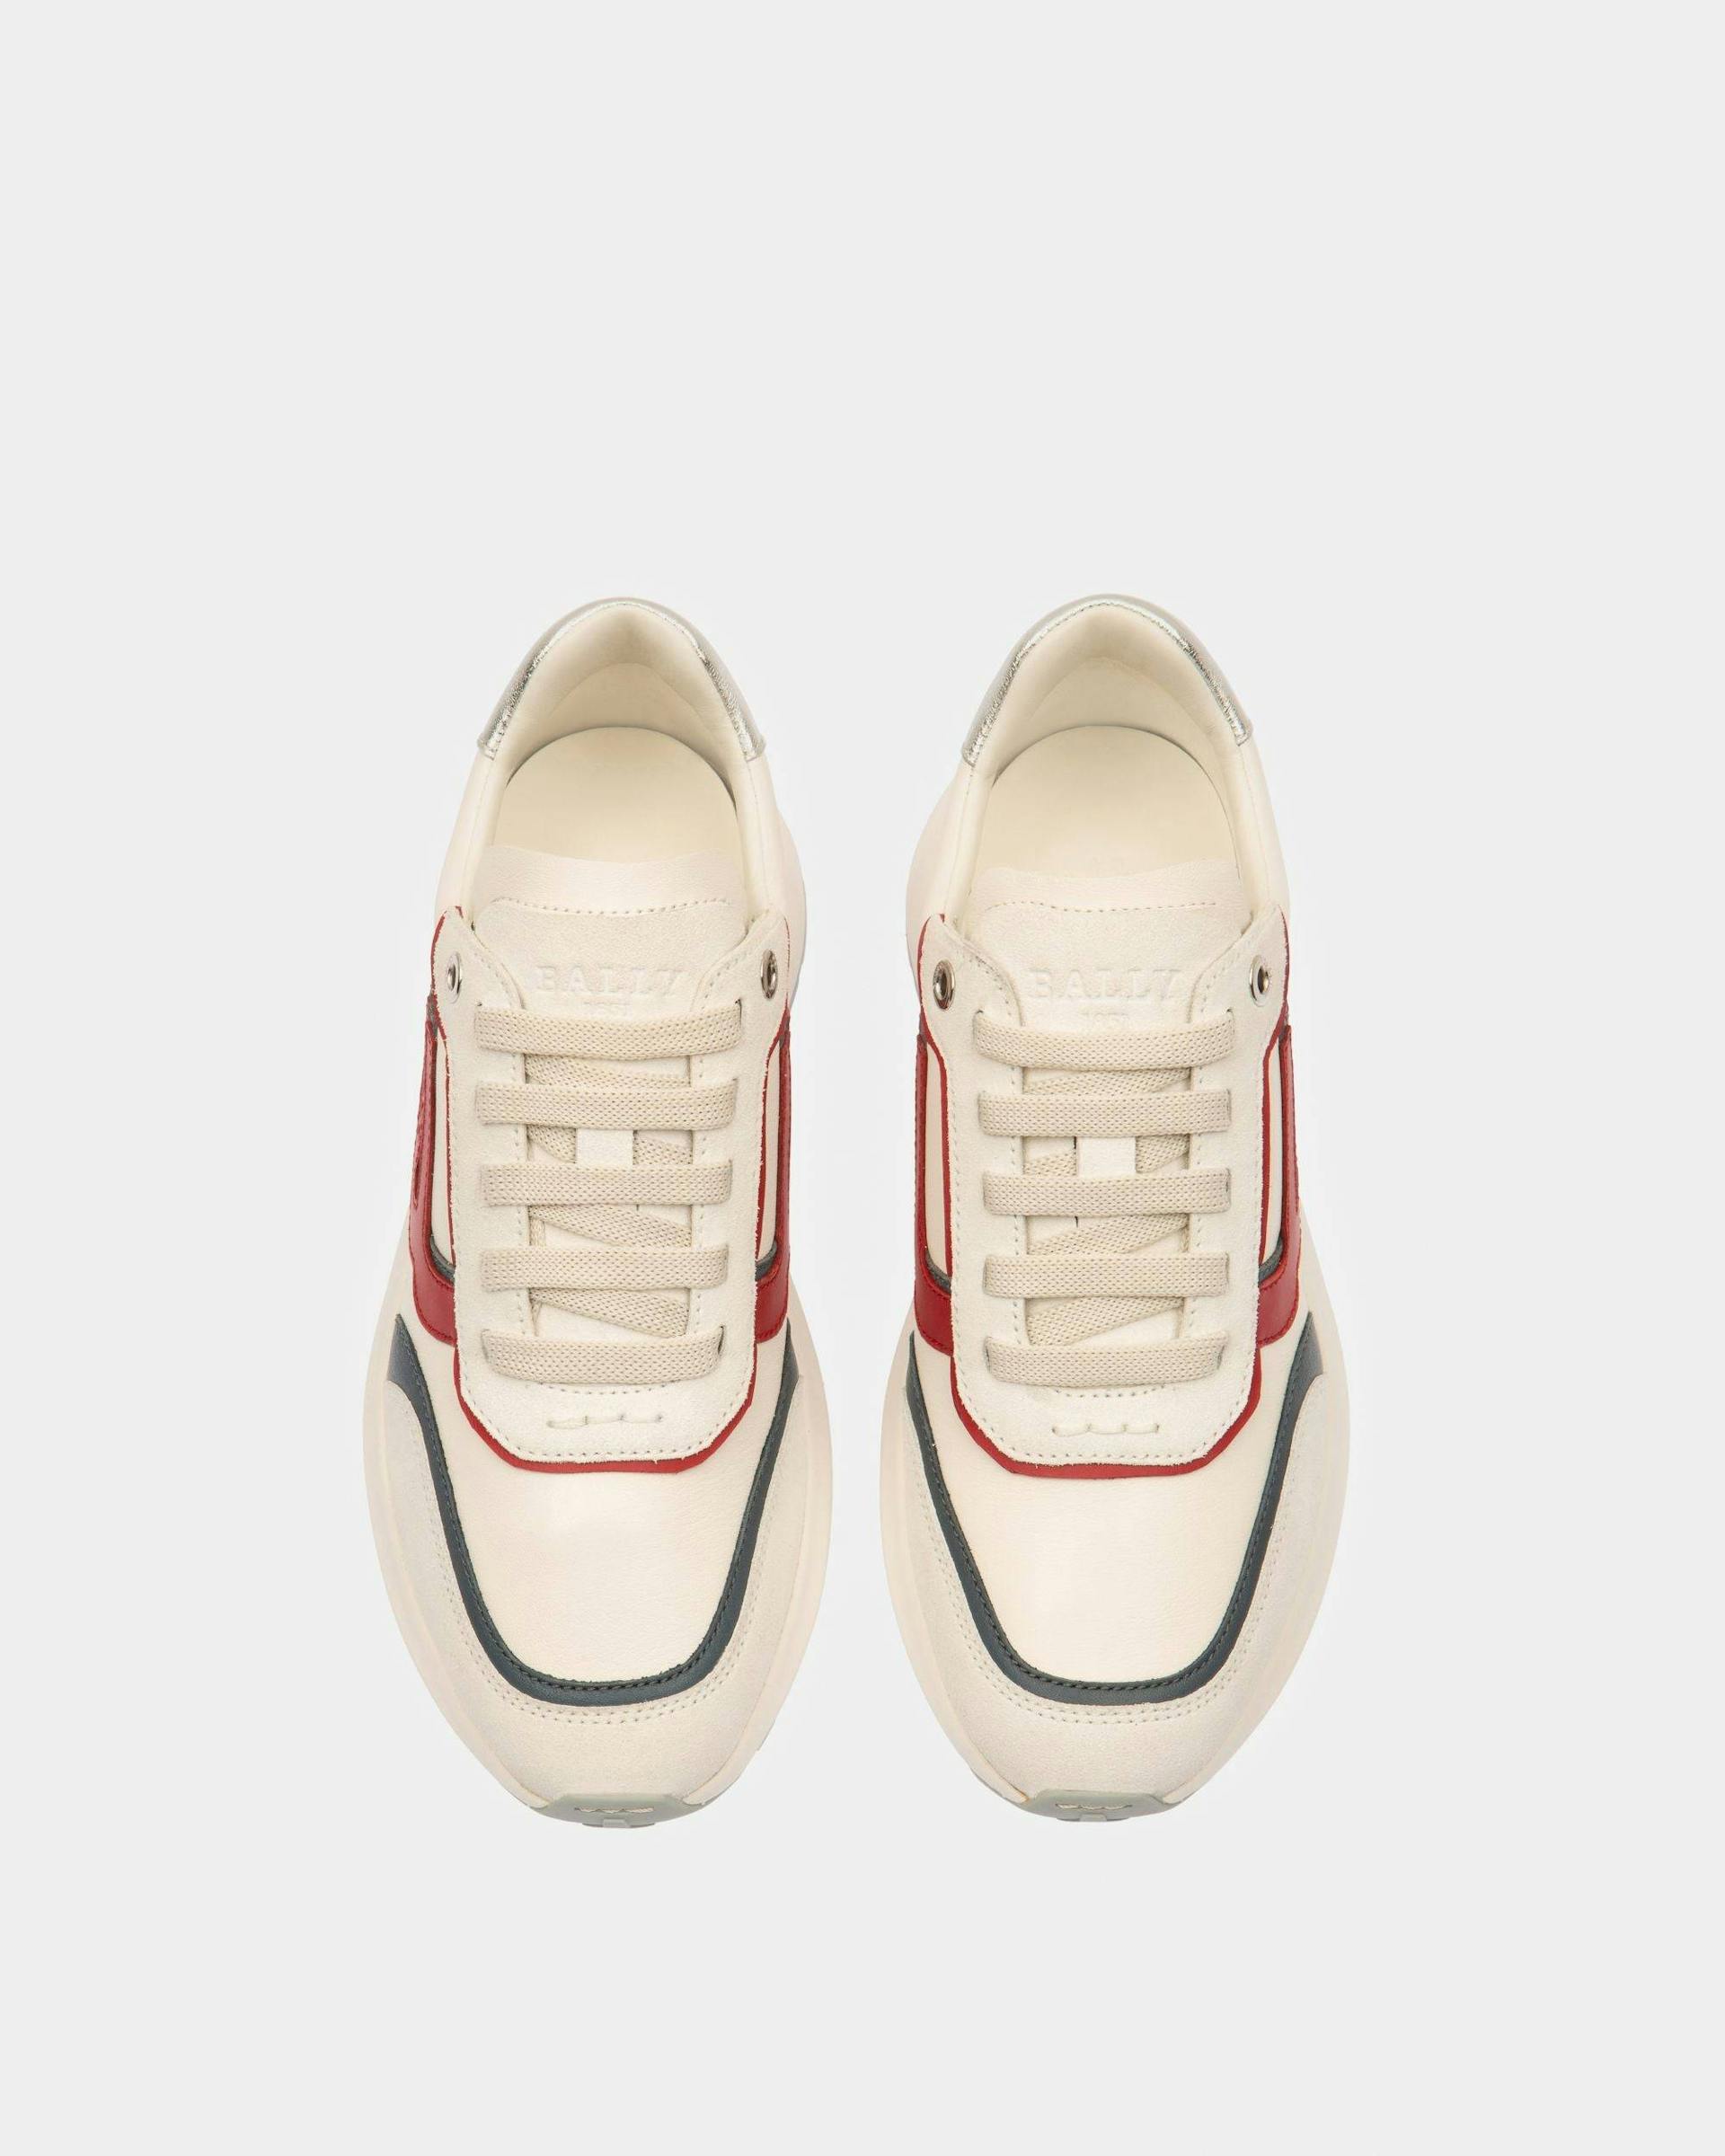 Demmy Sneaker In Pelle Bianca, Rossa E Blu - Donna - Bally - 02